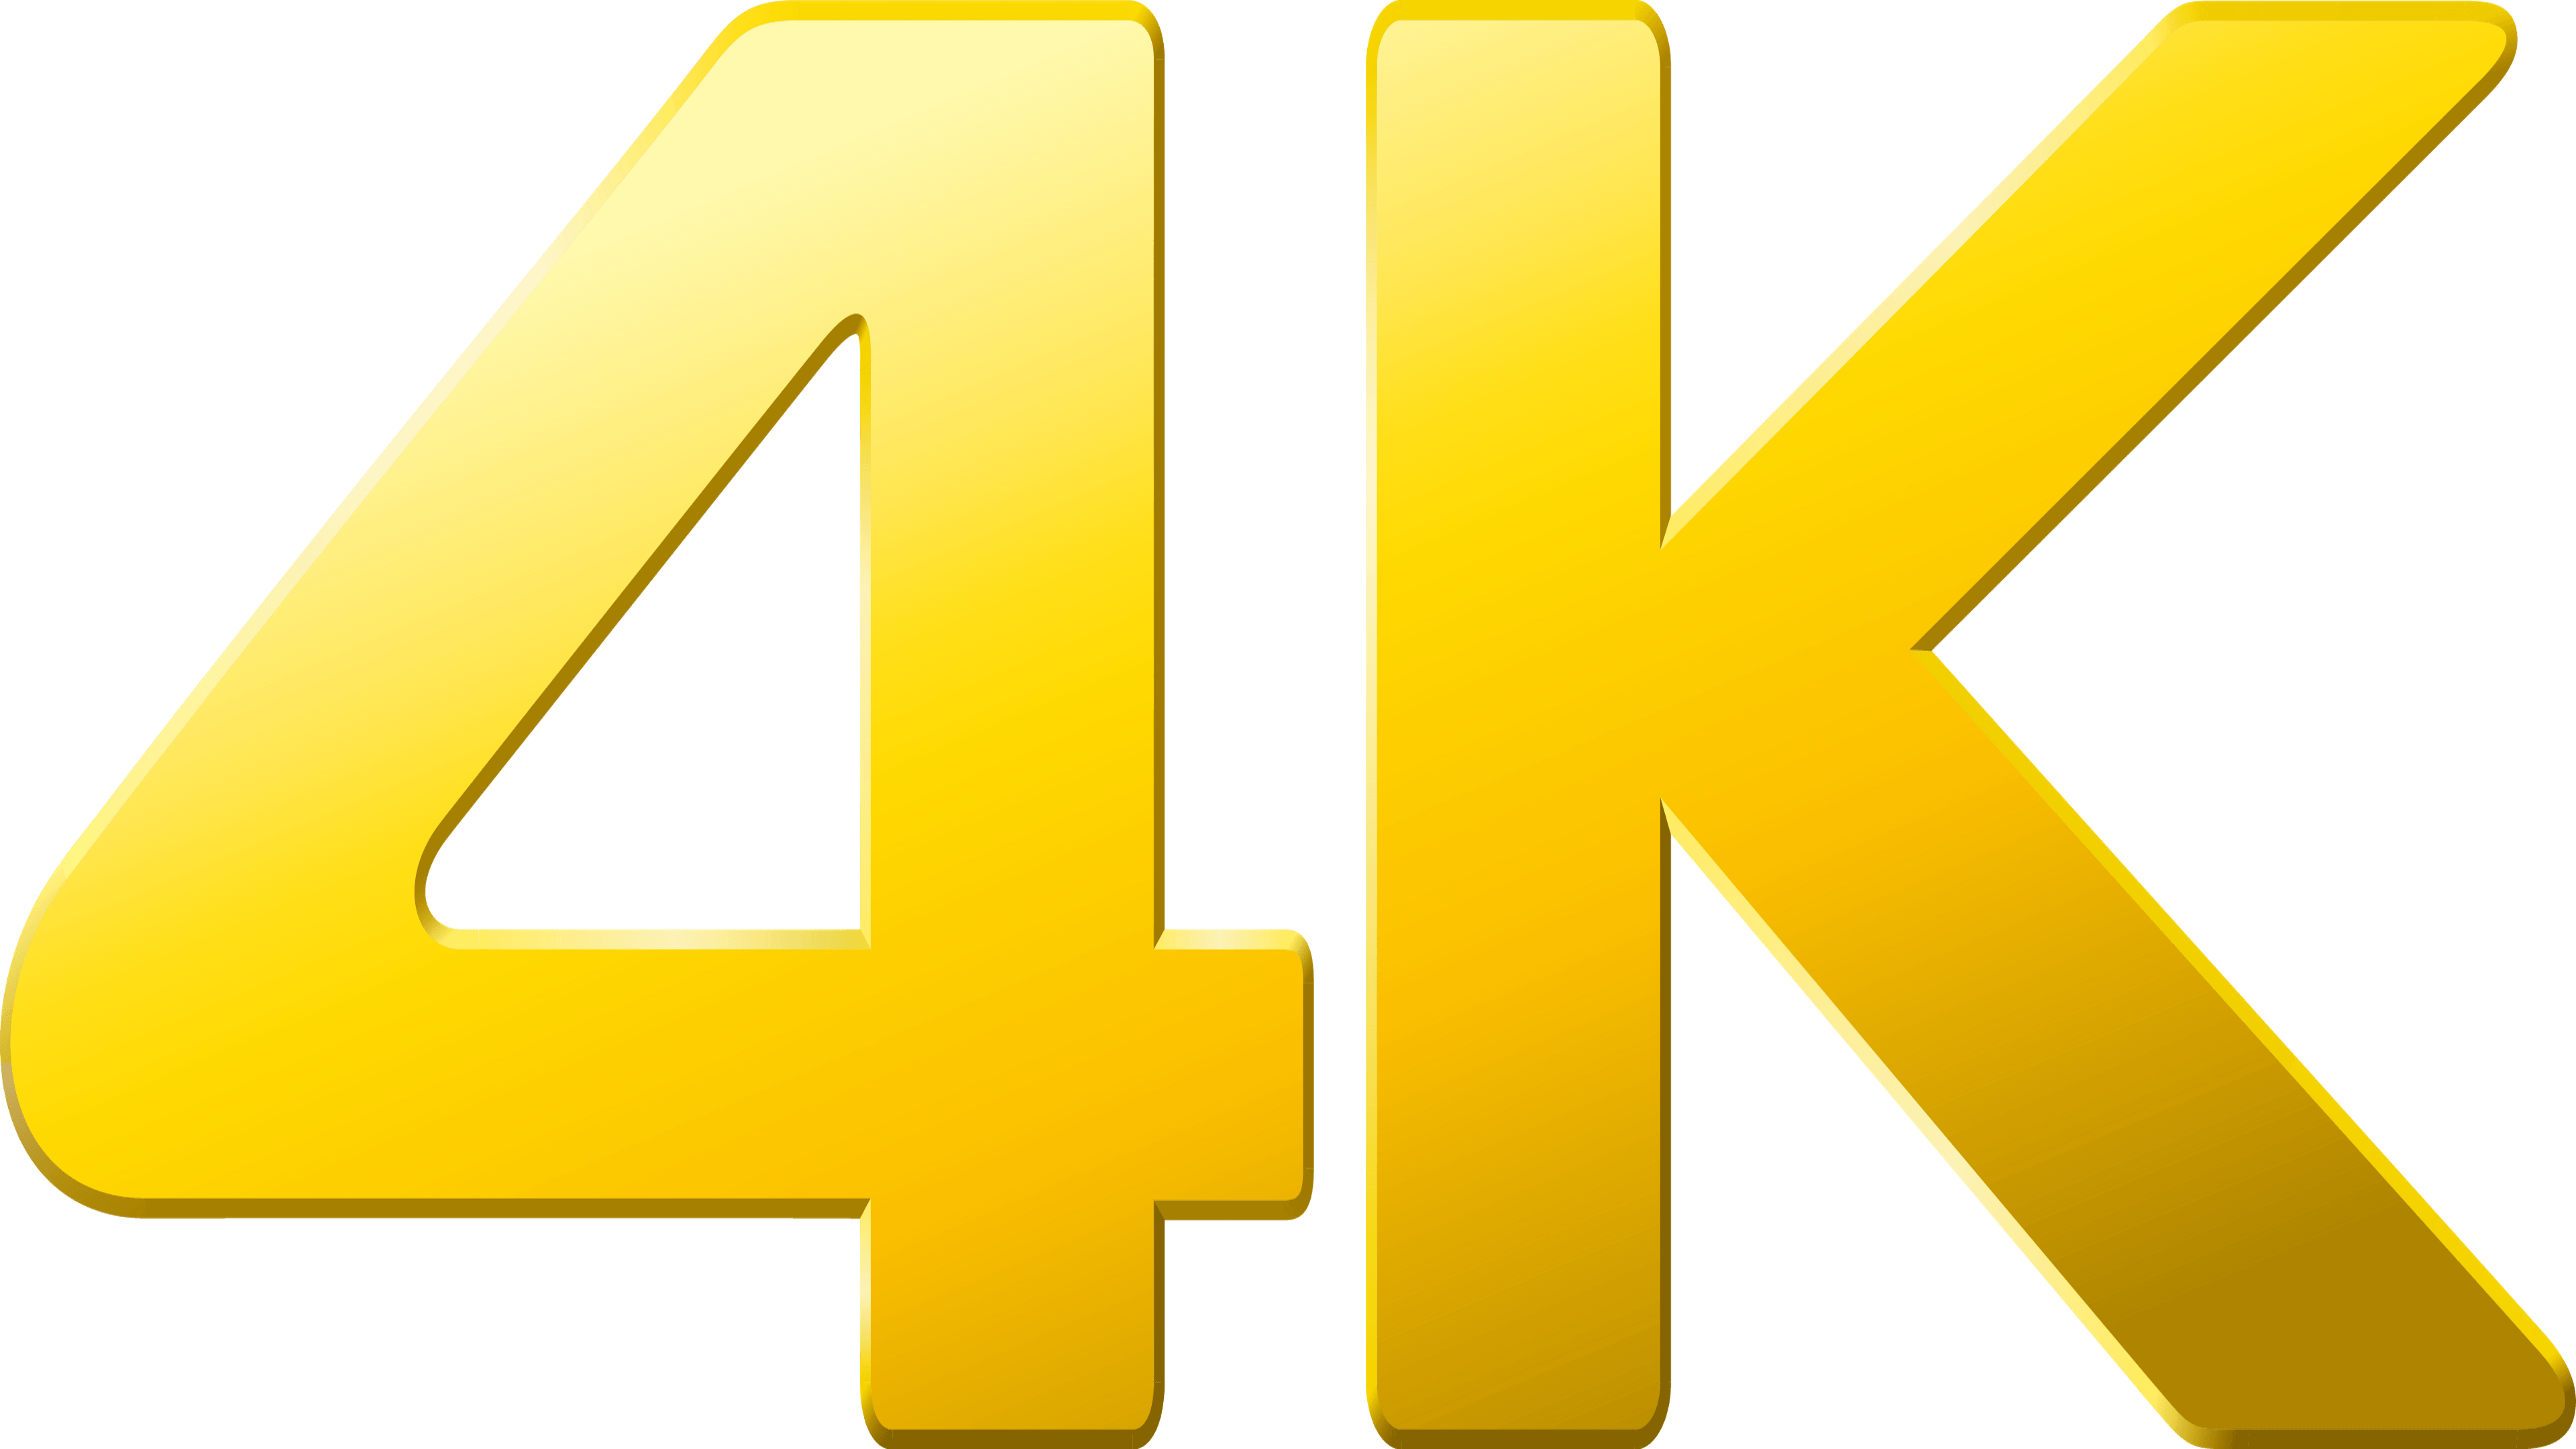 4K Logo - LogoDix